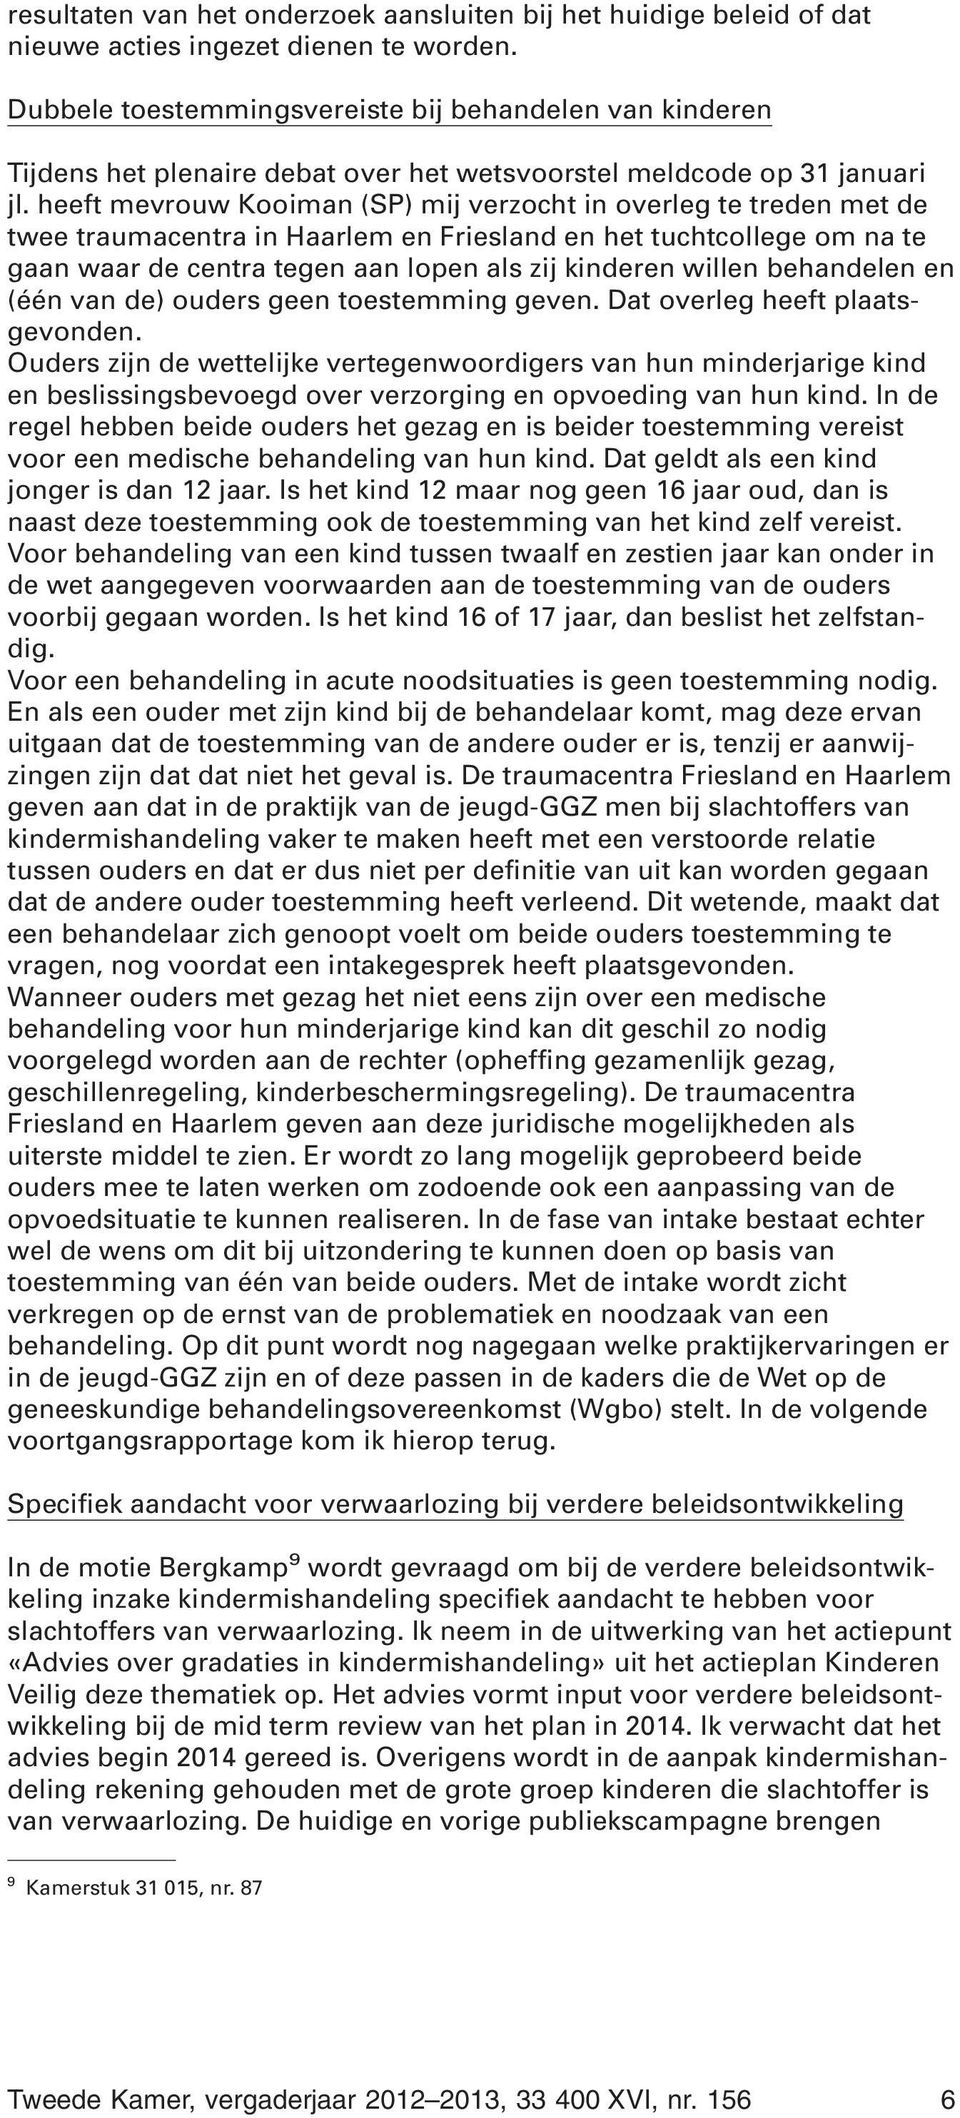 heeft mevrouw Kooiman (SP) mij verzocht in overleg te treden met de twee traumacentra in Haarlem en Friesland en het tuchtcollege om na te gaan waar de centra tegen aan lopen als zij kinderen willen